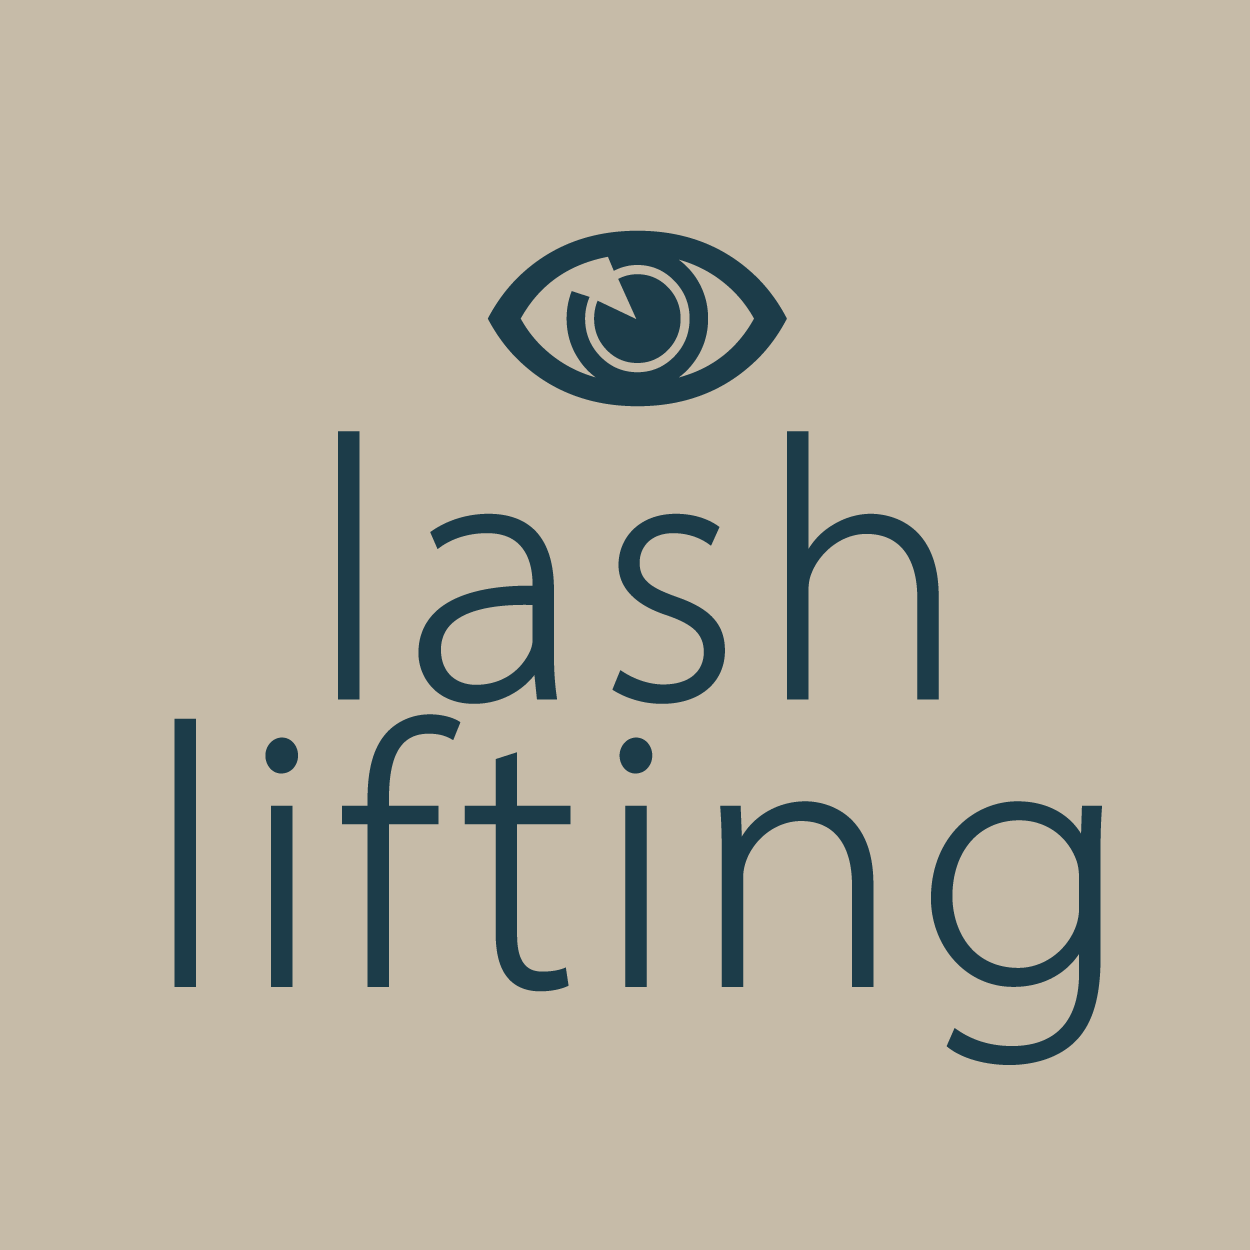 Lash lifting